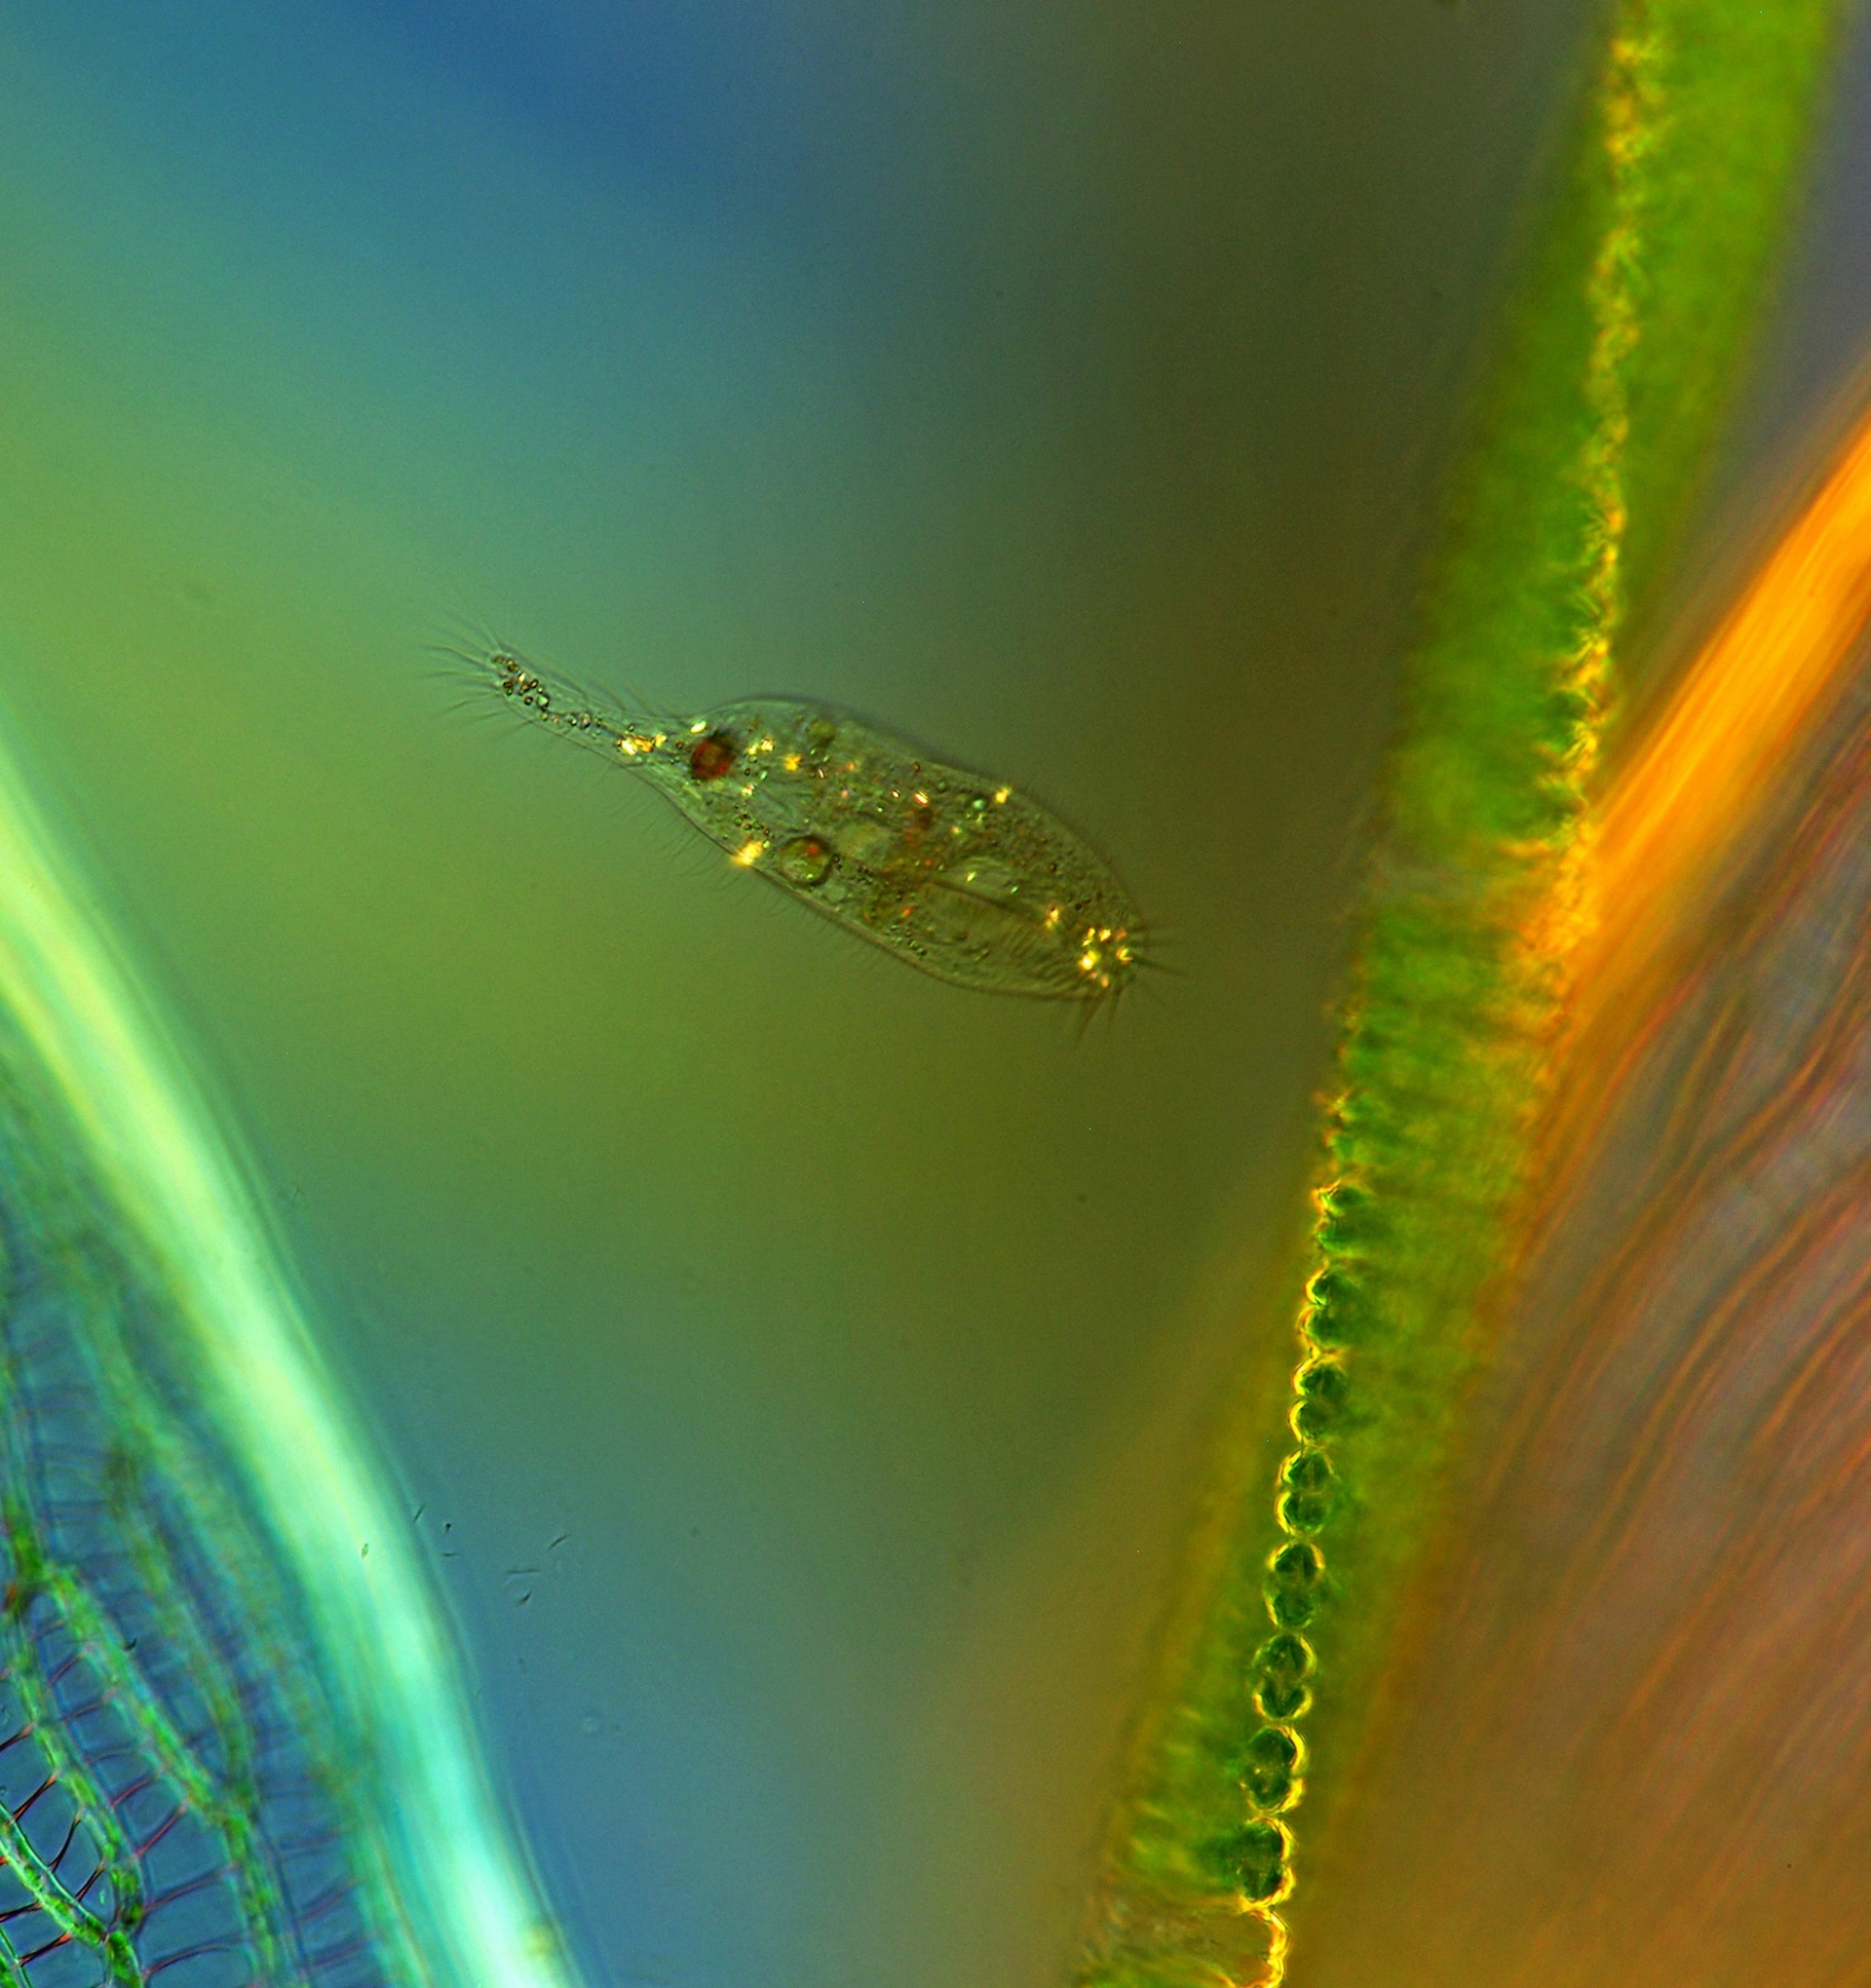 纖毛蟲是一種單細胞微生物，圖中是顯微鏡下的一隻纖毛蟲，在泥炭苔旁邊游泳。彈跳蟲屬的纖毛蟲光靠吃病毒就能活、還能長大，這是之前沒有看過的。PHOTOGRAPH BY MAREK MIS / SCIENCE SOURCE